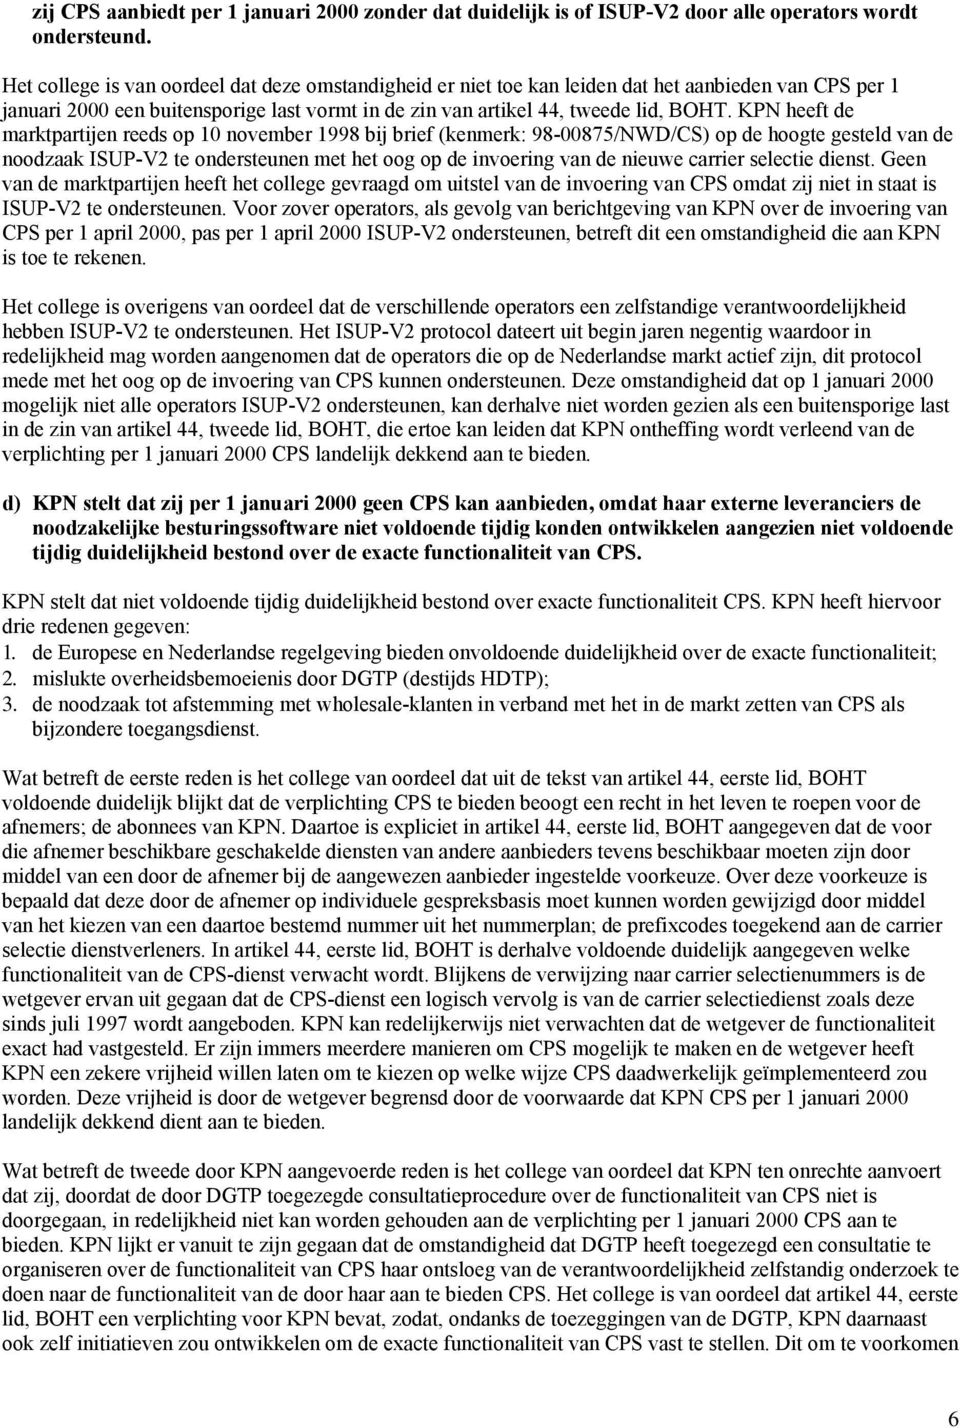 KPN heeft de marktpartijen reeds op 10 november 1998 bij brief (kenmerk: 98-00875/NWD/CS) op de hoogte gesteld van de noodzaak ISUP-V2 te ondersteunen met het oog op de invoering van de nieuwe